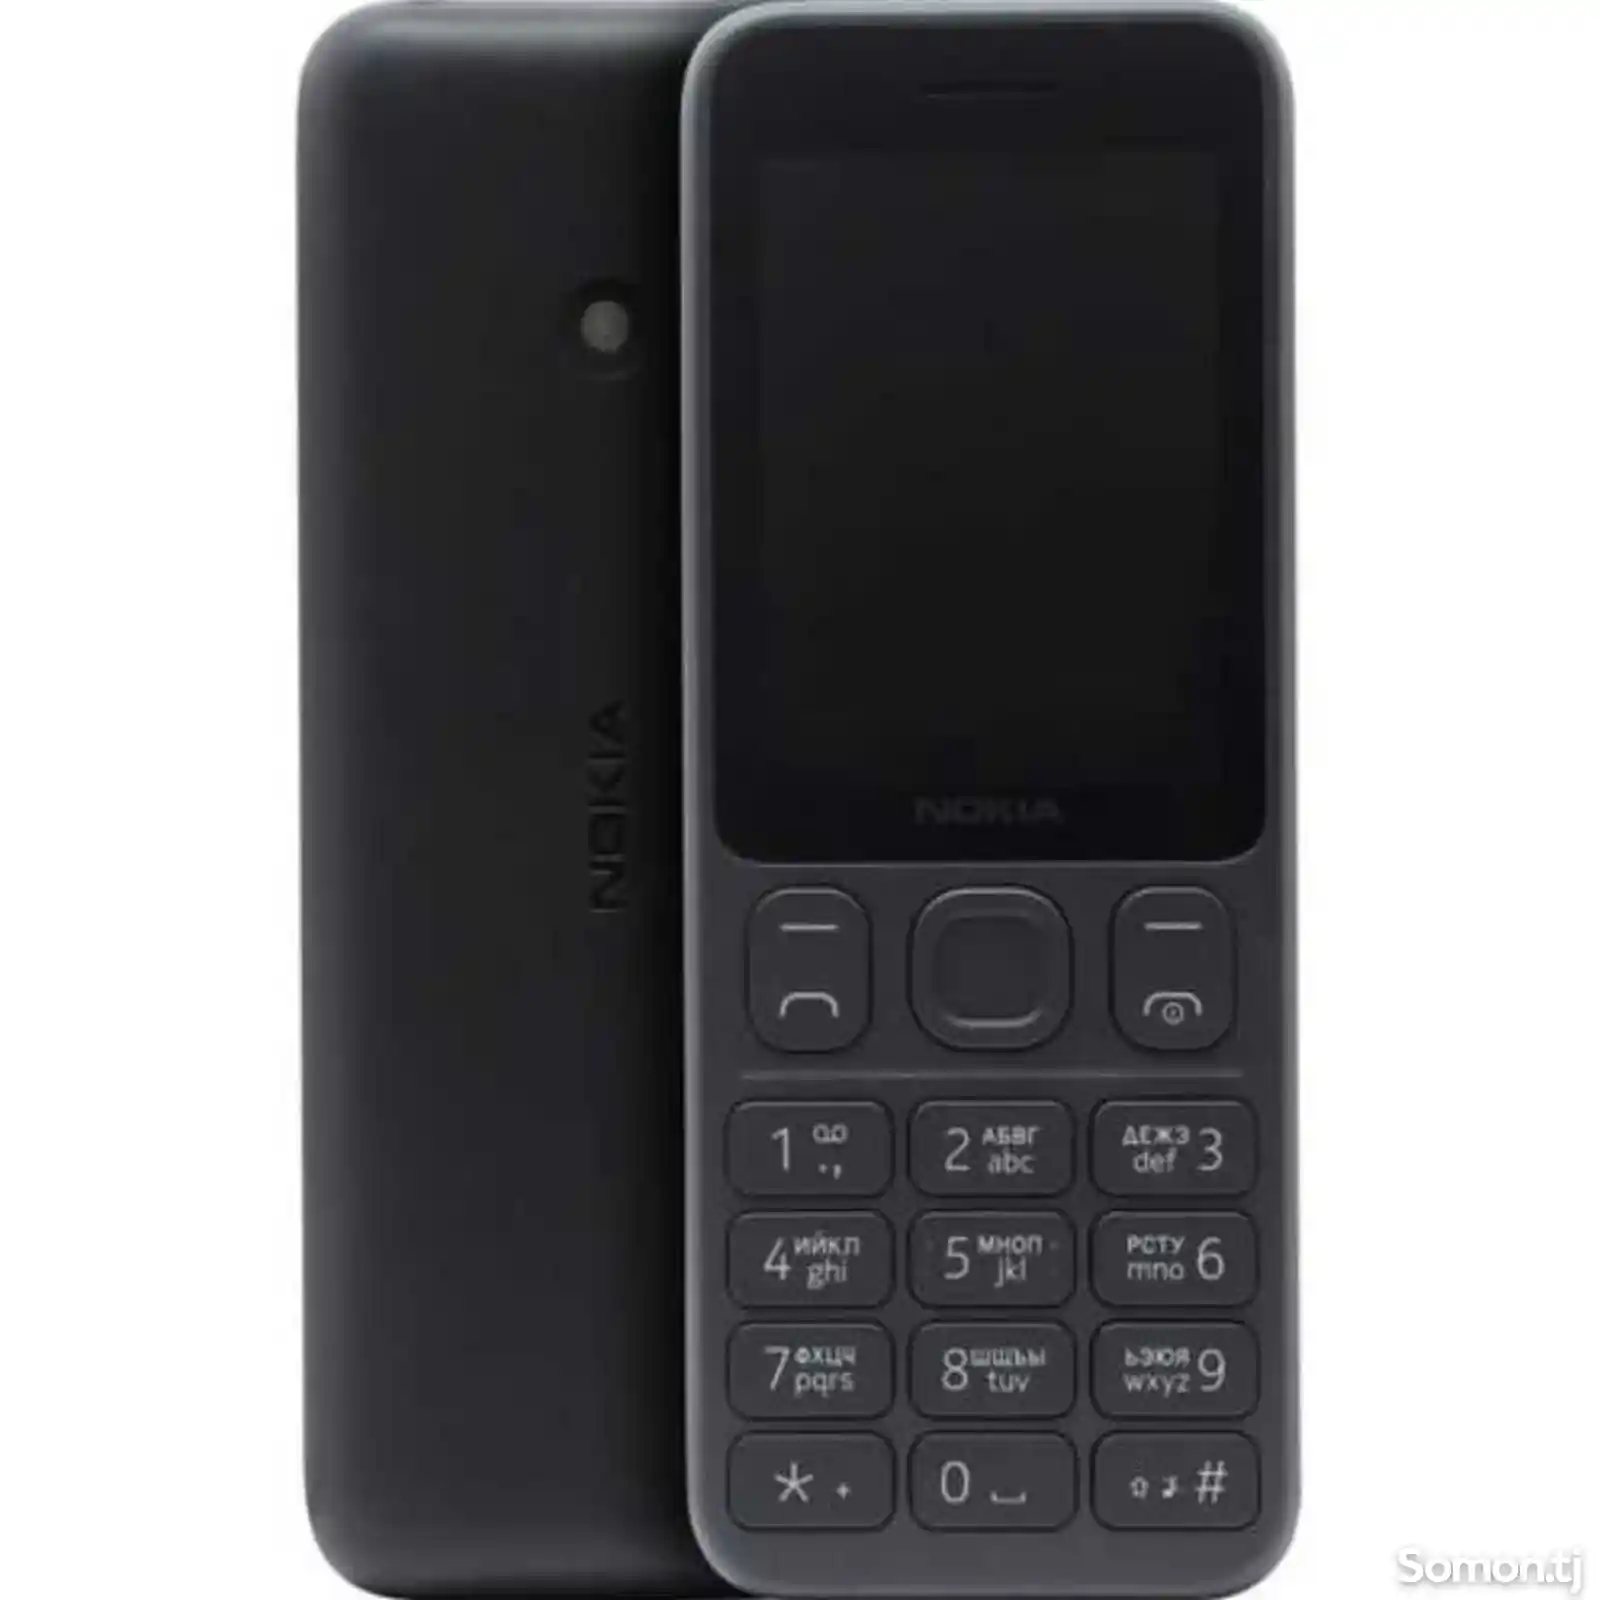 Nokia 125-7